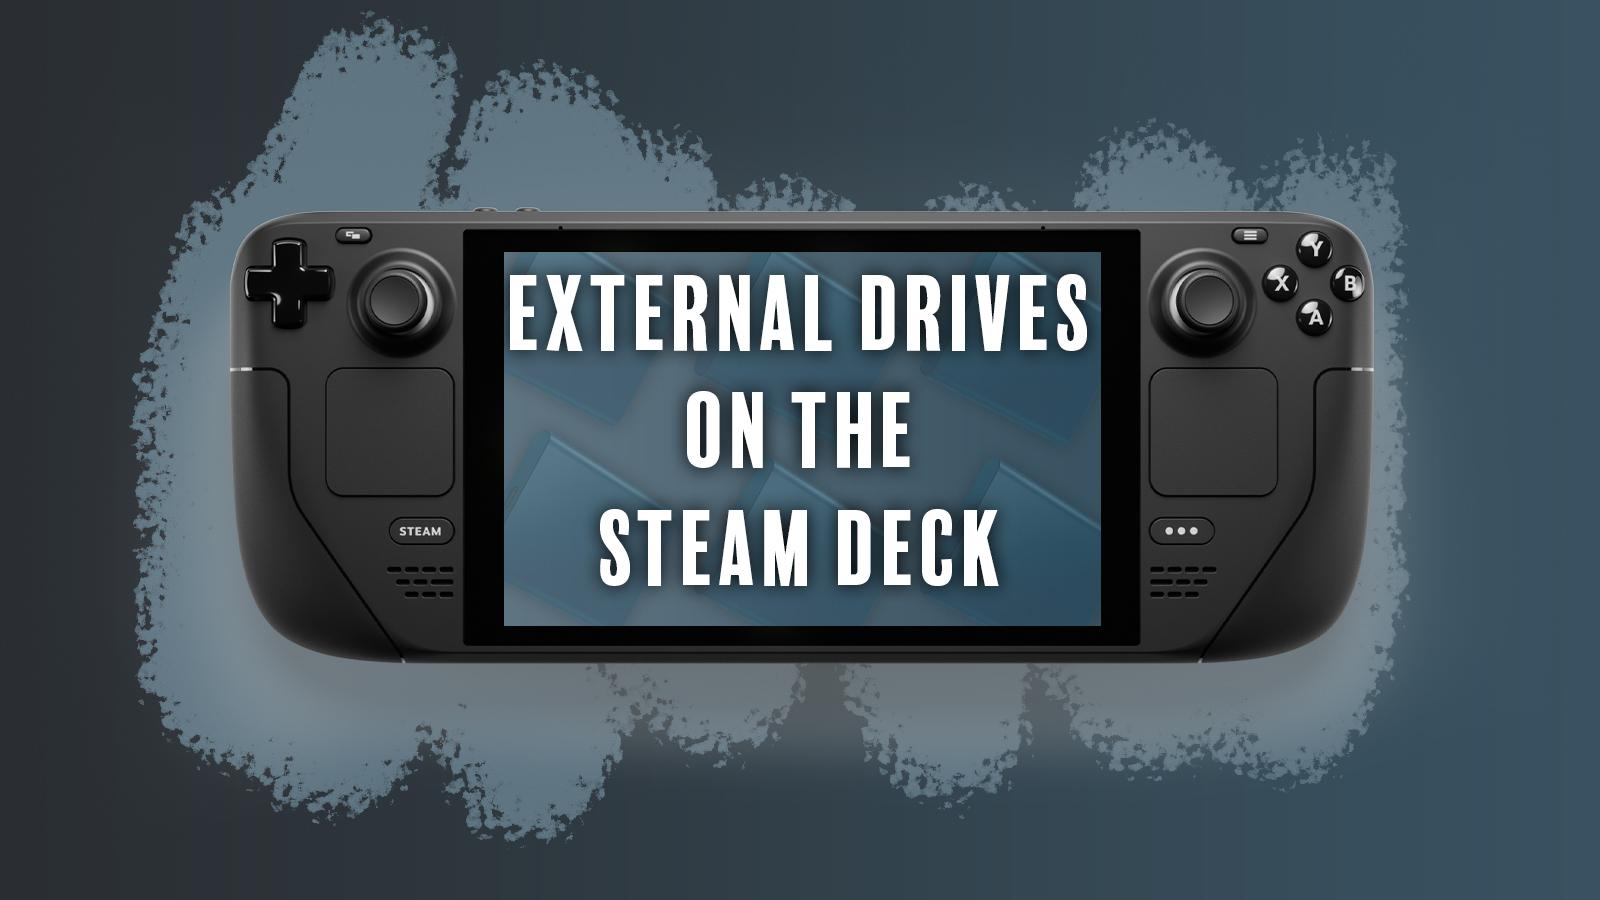 External SSD on Steam Deck